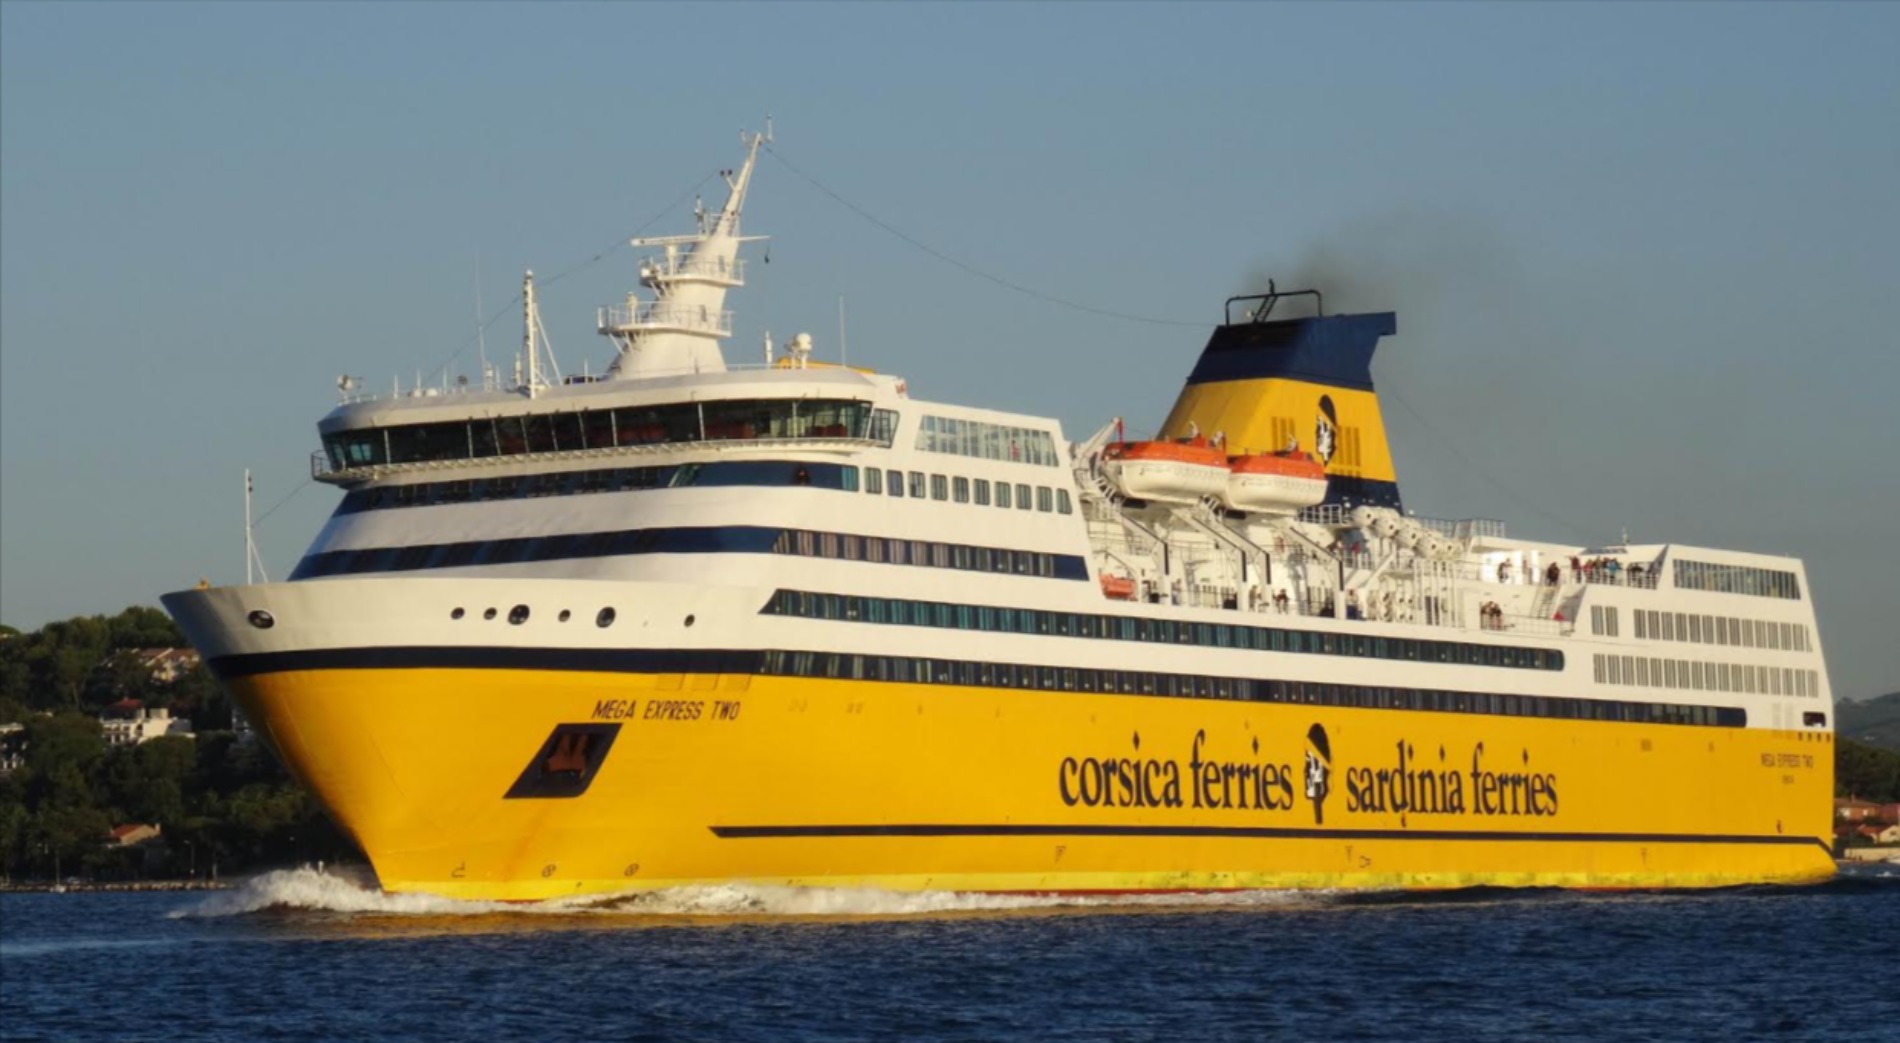 Corsica Sardinia Ferries: sconto immediato per chi prenota fino al 10 giugno